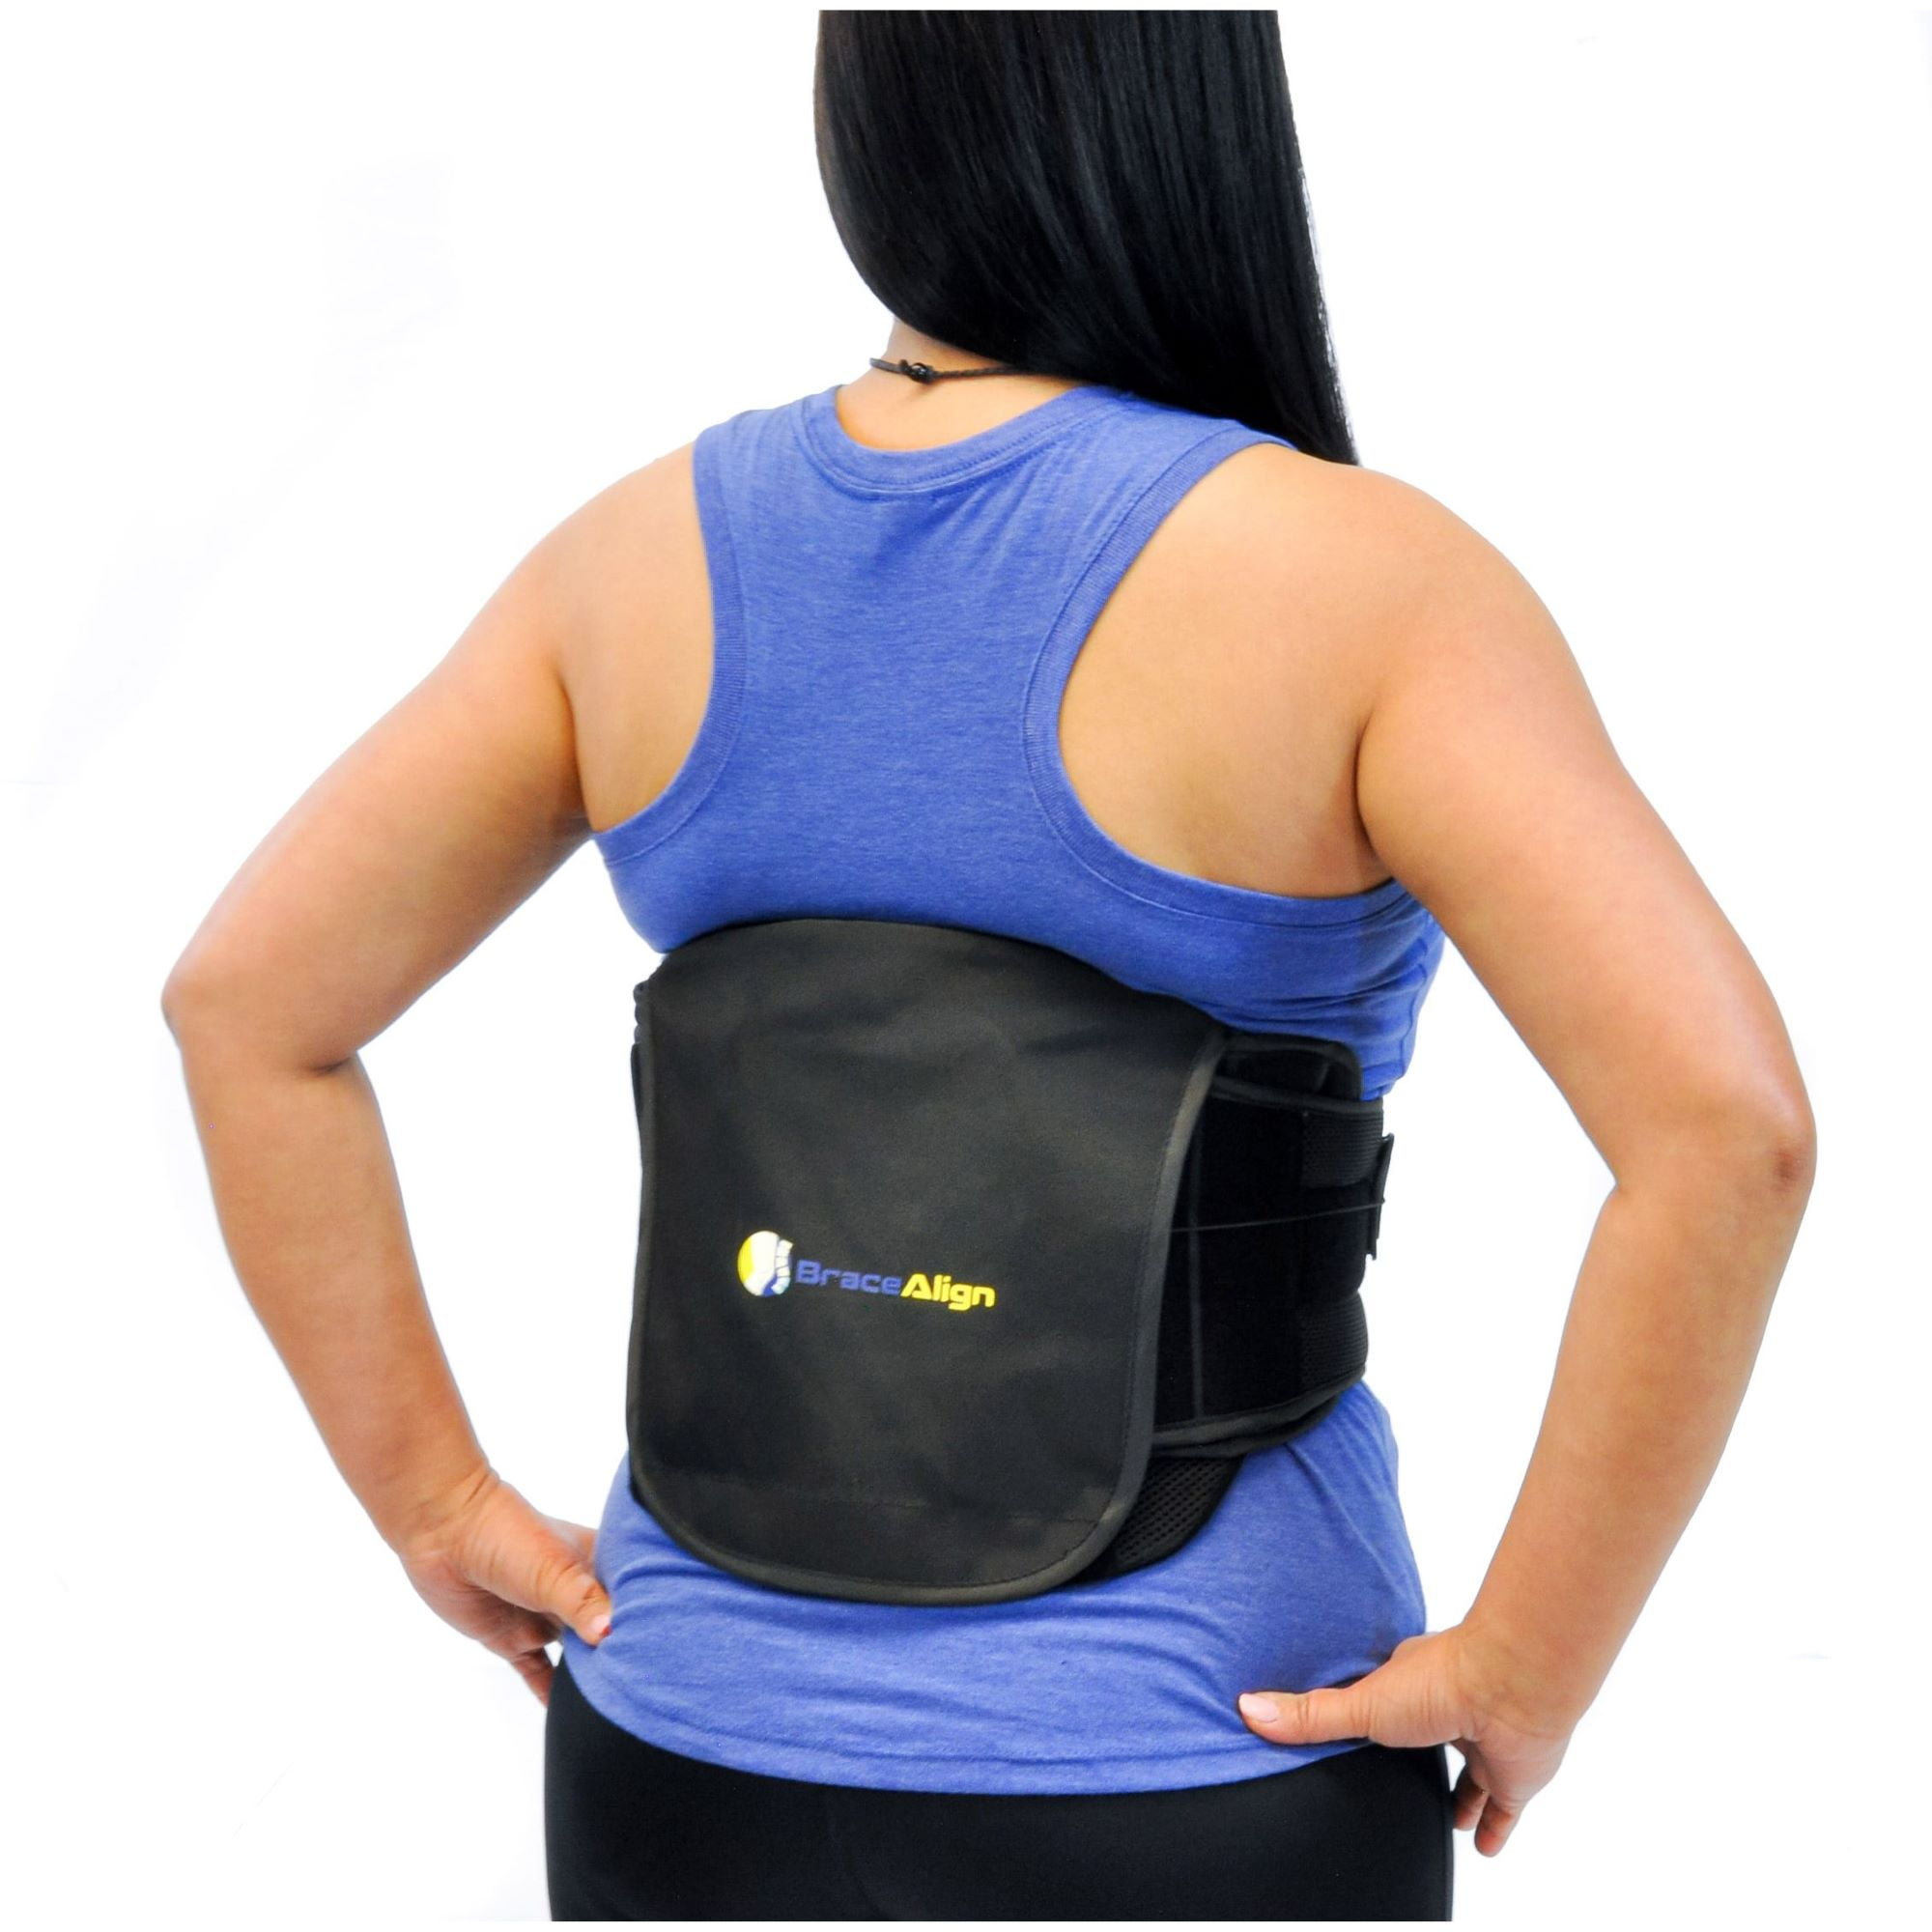 Beurer EM38 - Cinturón para aliviar el dolor de espalda baja, estimulador  muscular TENS, 4 electrodos, ajustable y transpirable, para mujeres y